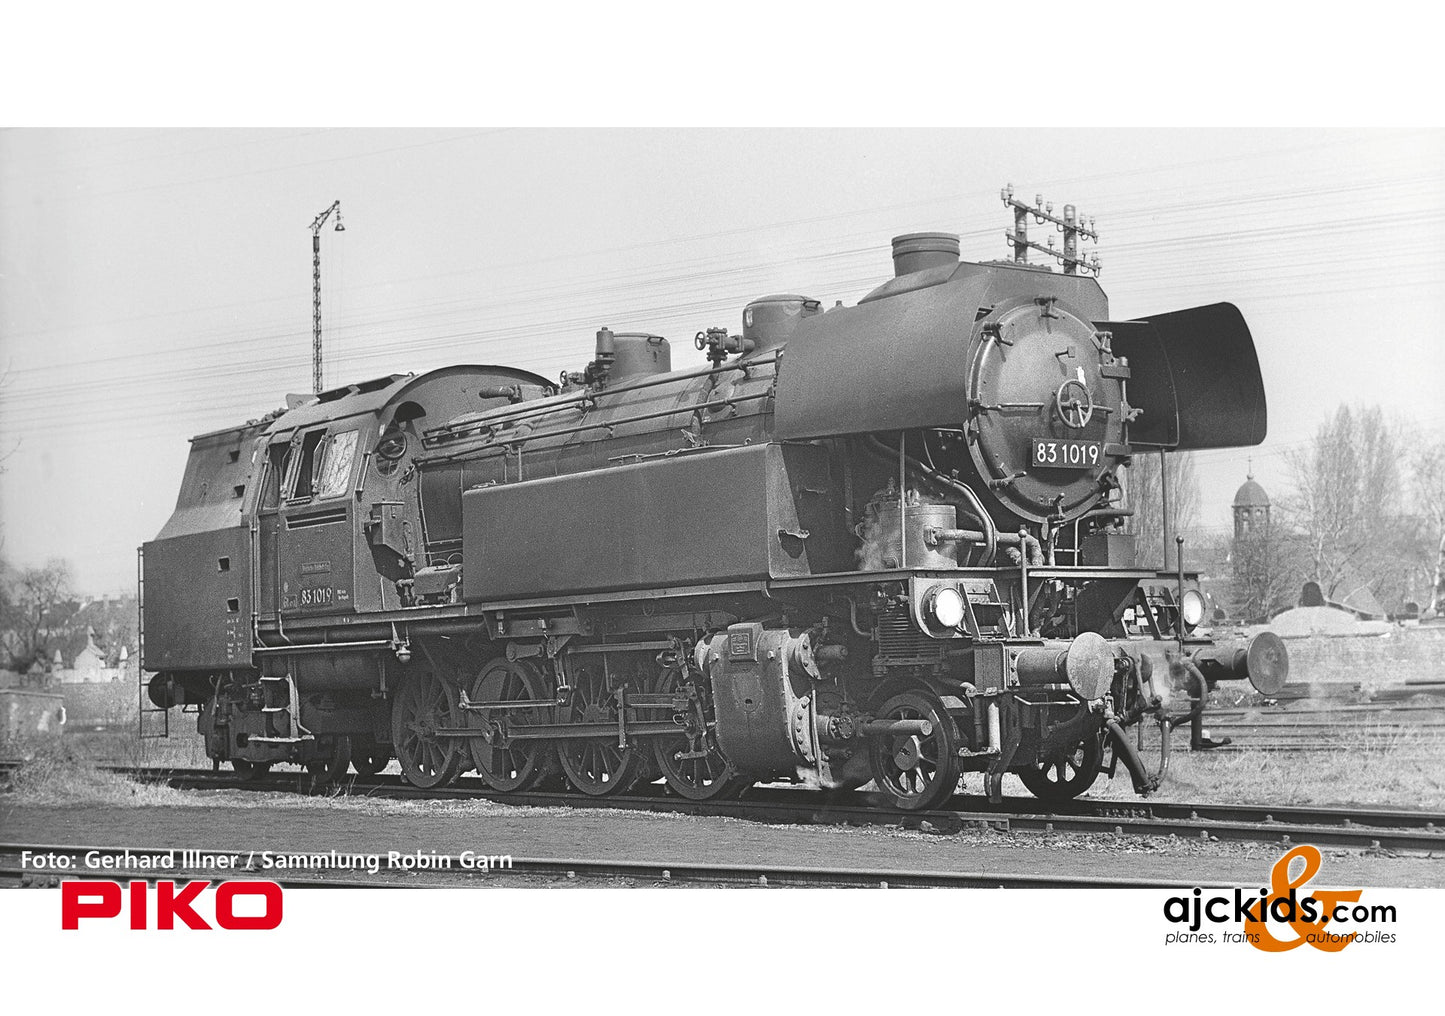 Piko 50636 - BR 83.10 Steam Locomotive DR III Sound